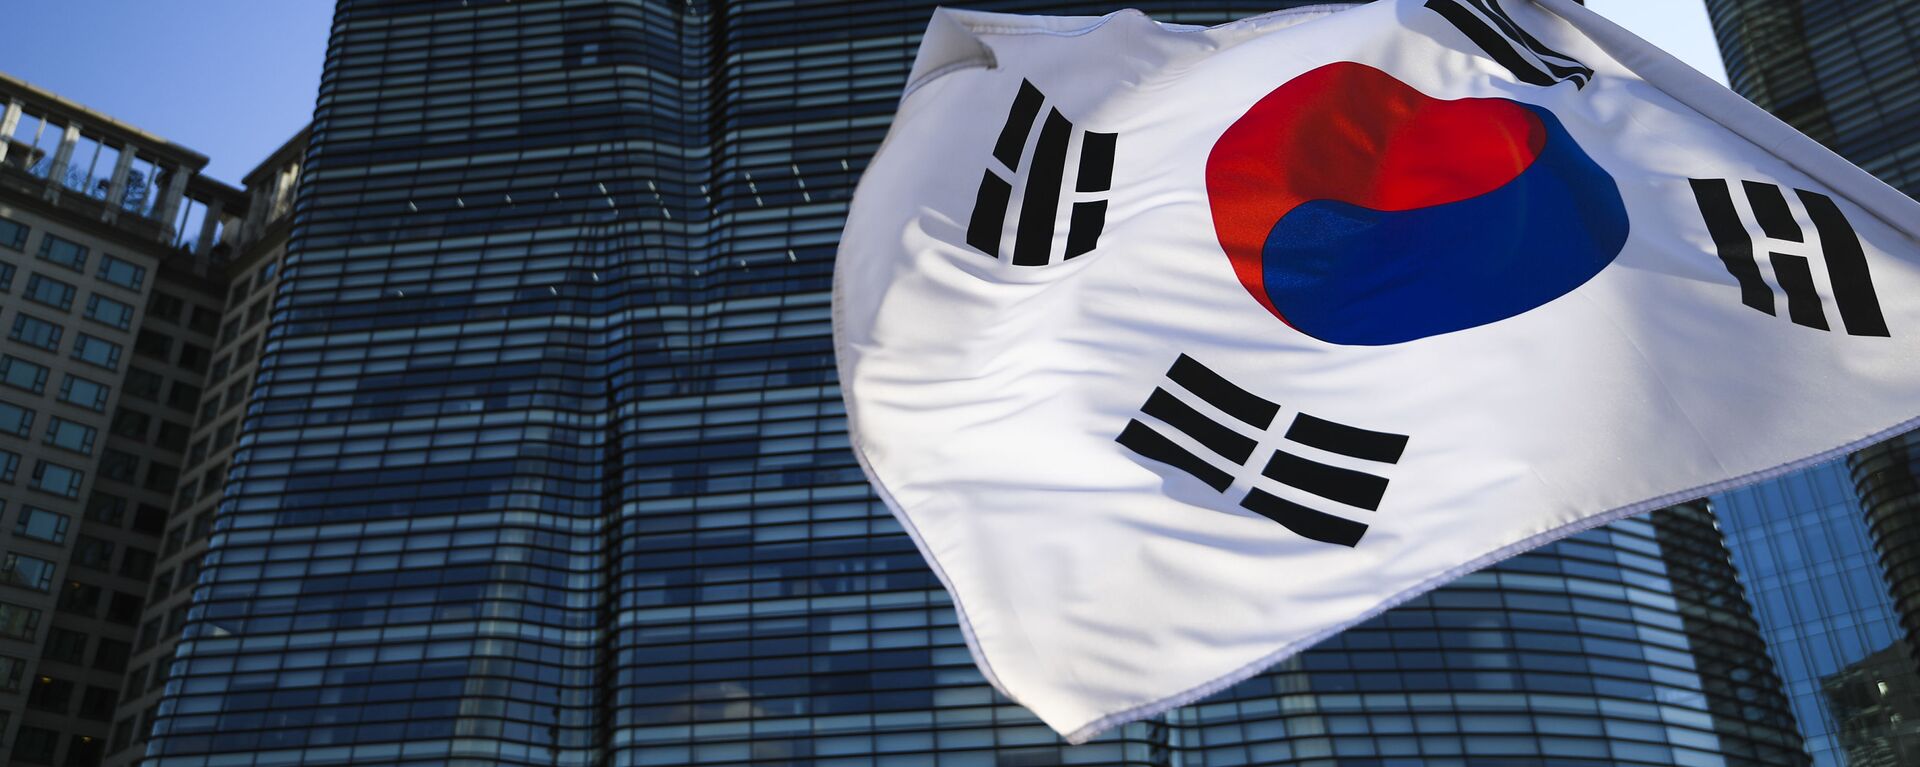 韓国の旗 - Sputnik 日本, 1920, 15.06.2021